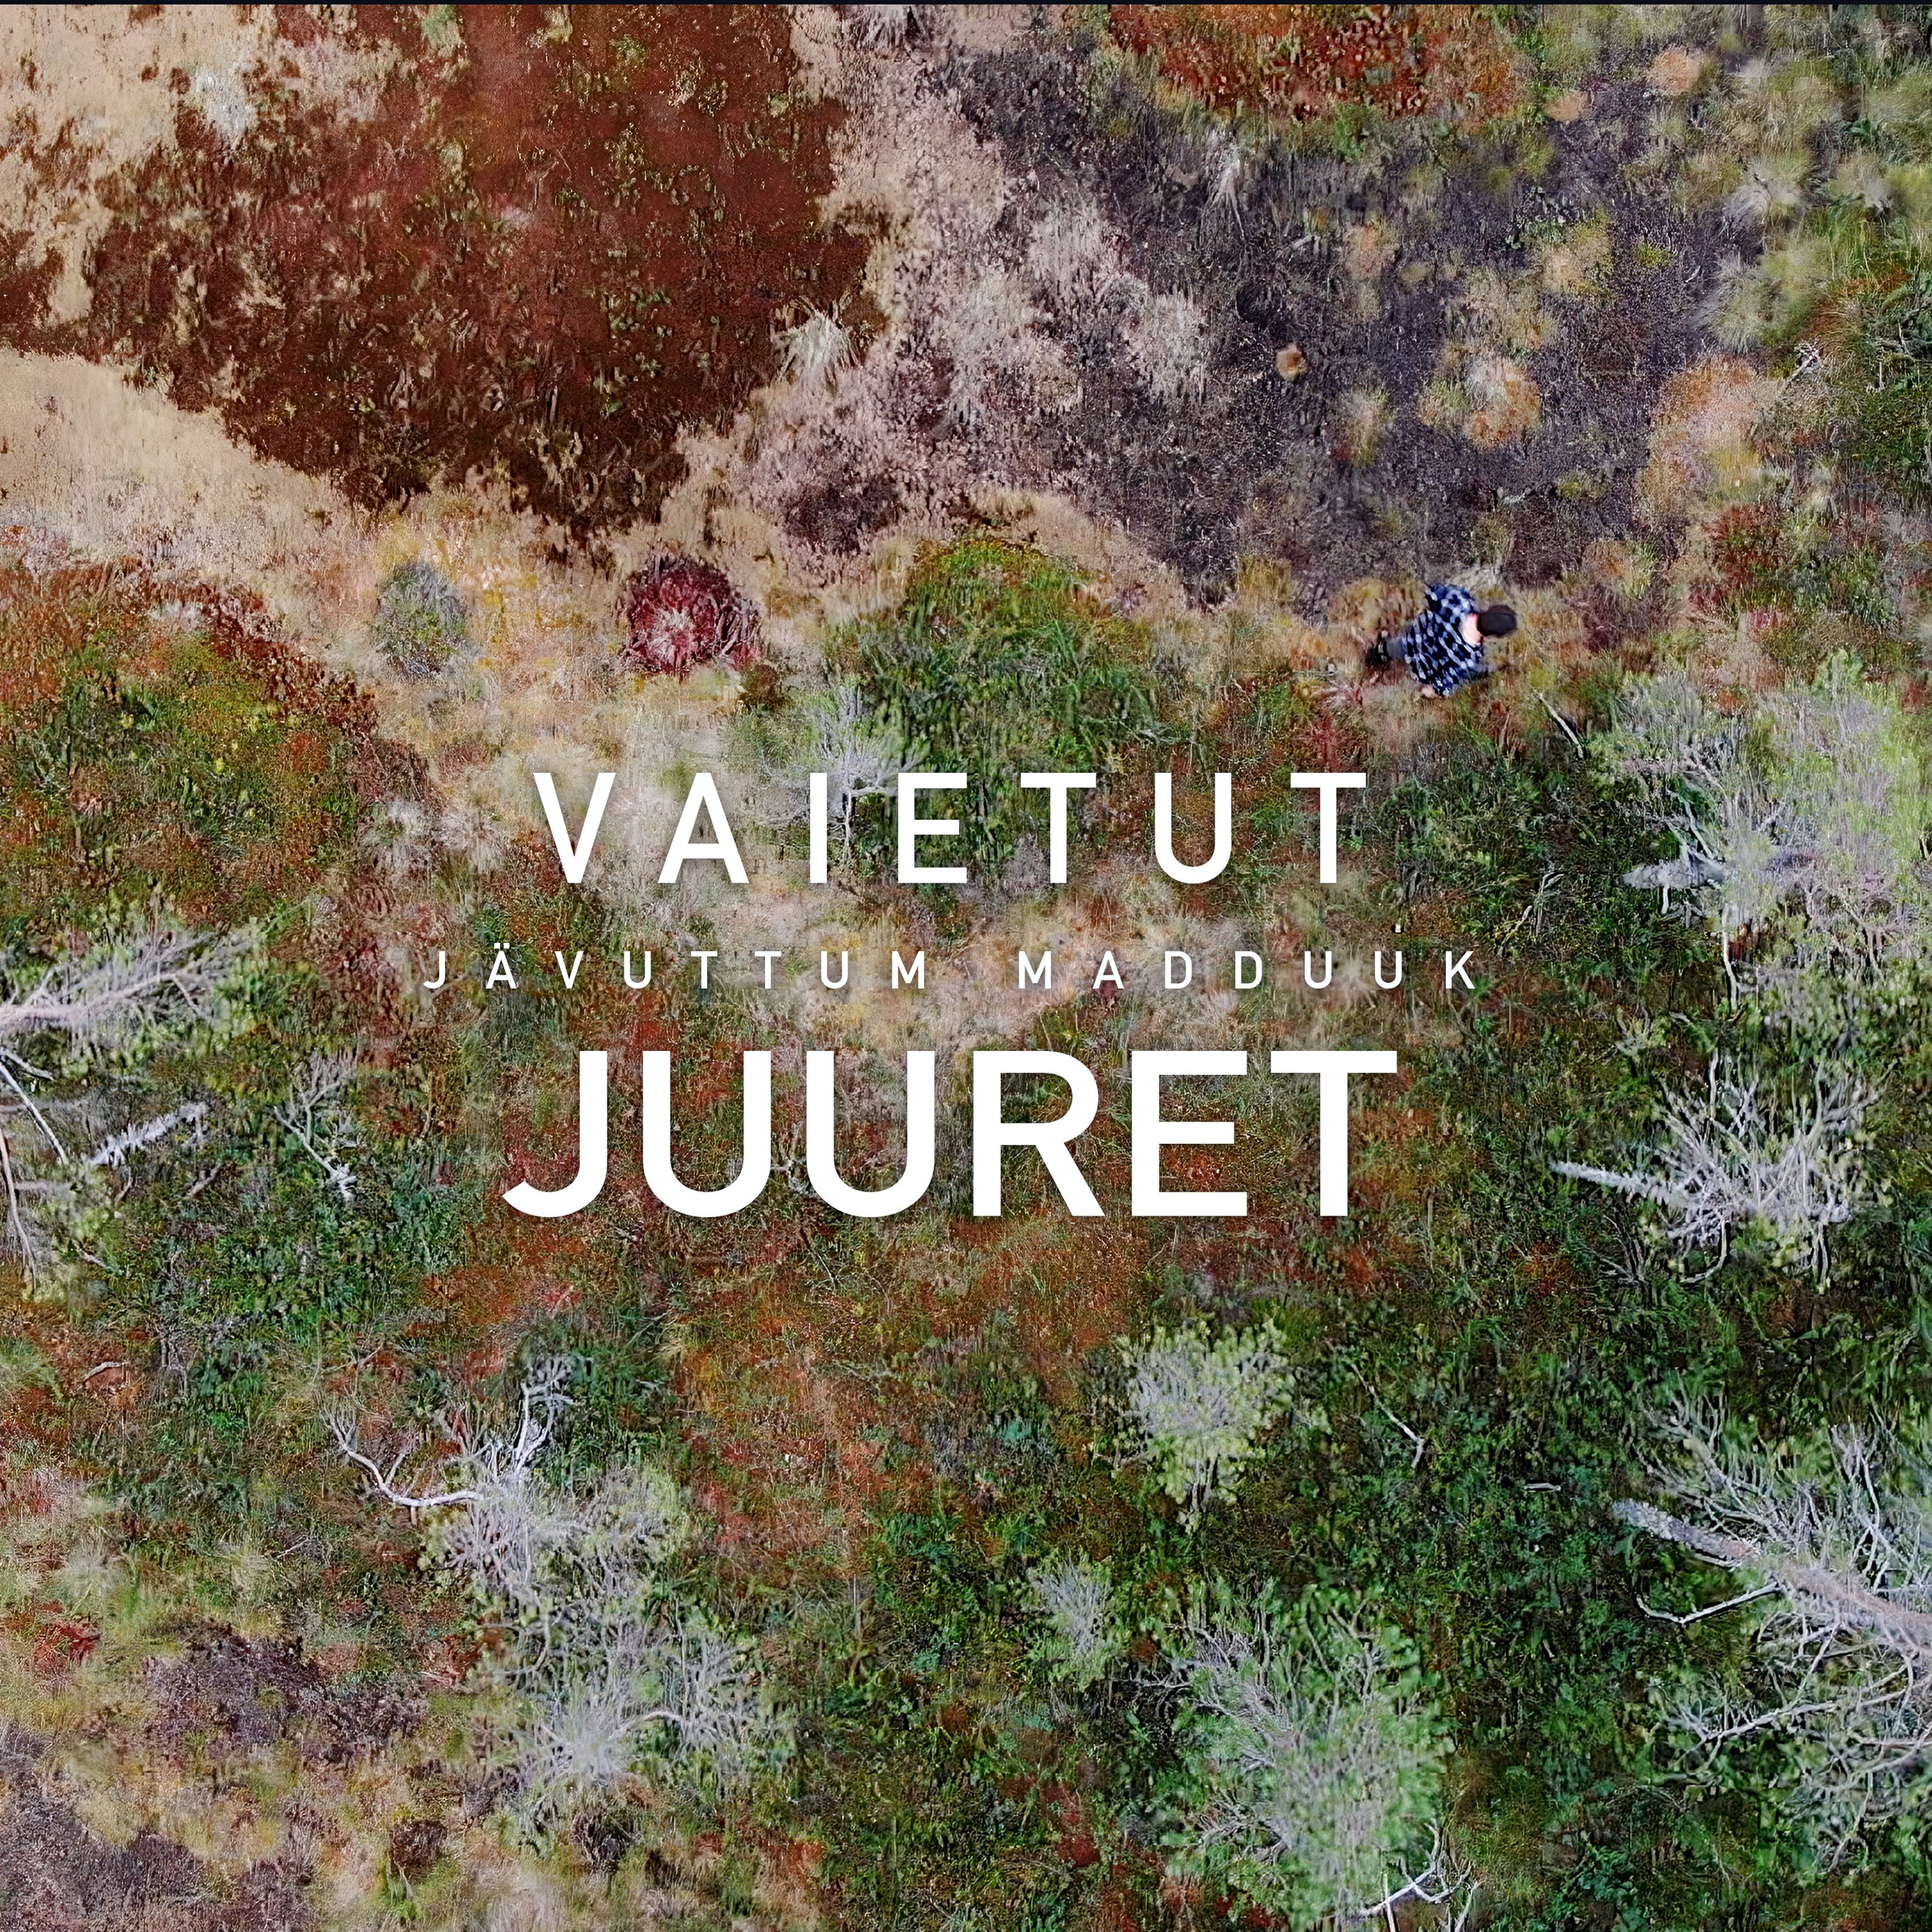 Vaietut Juuret - Jävuttum Madduuk (Original Soundtrack) 